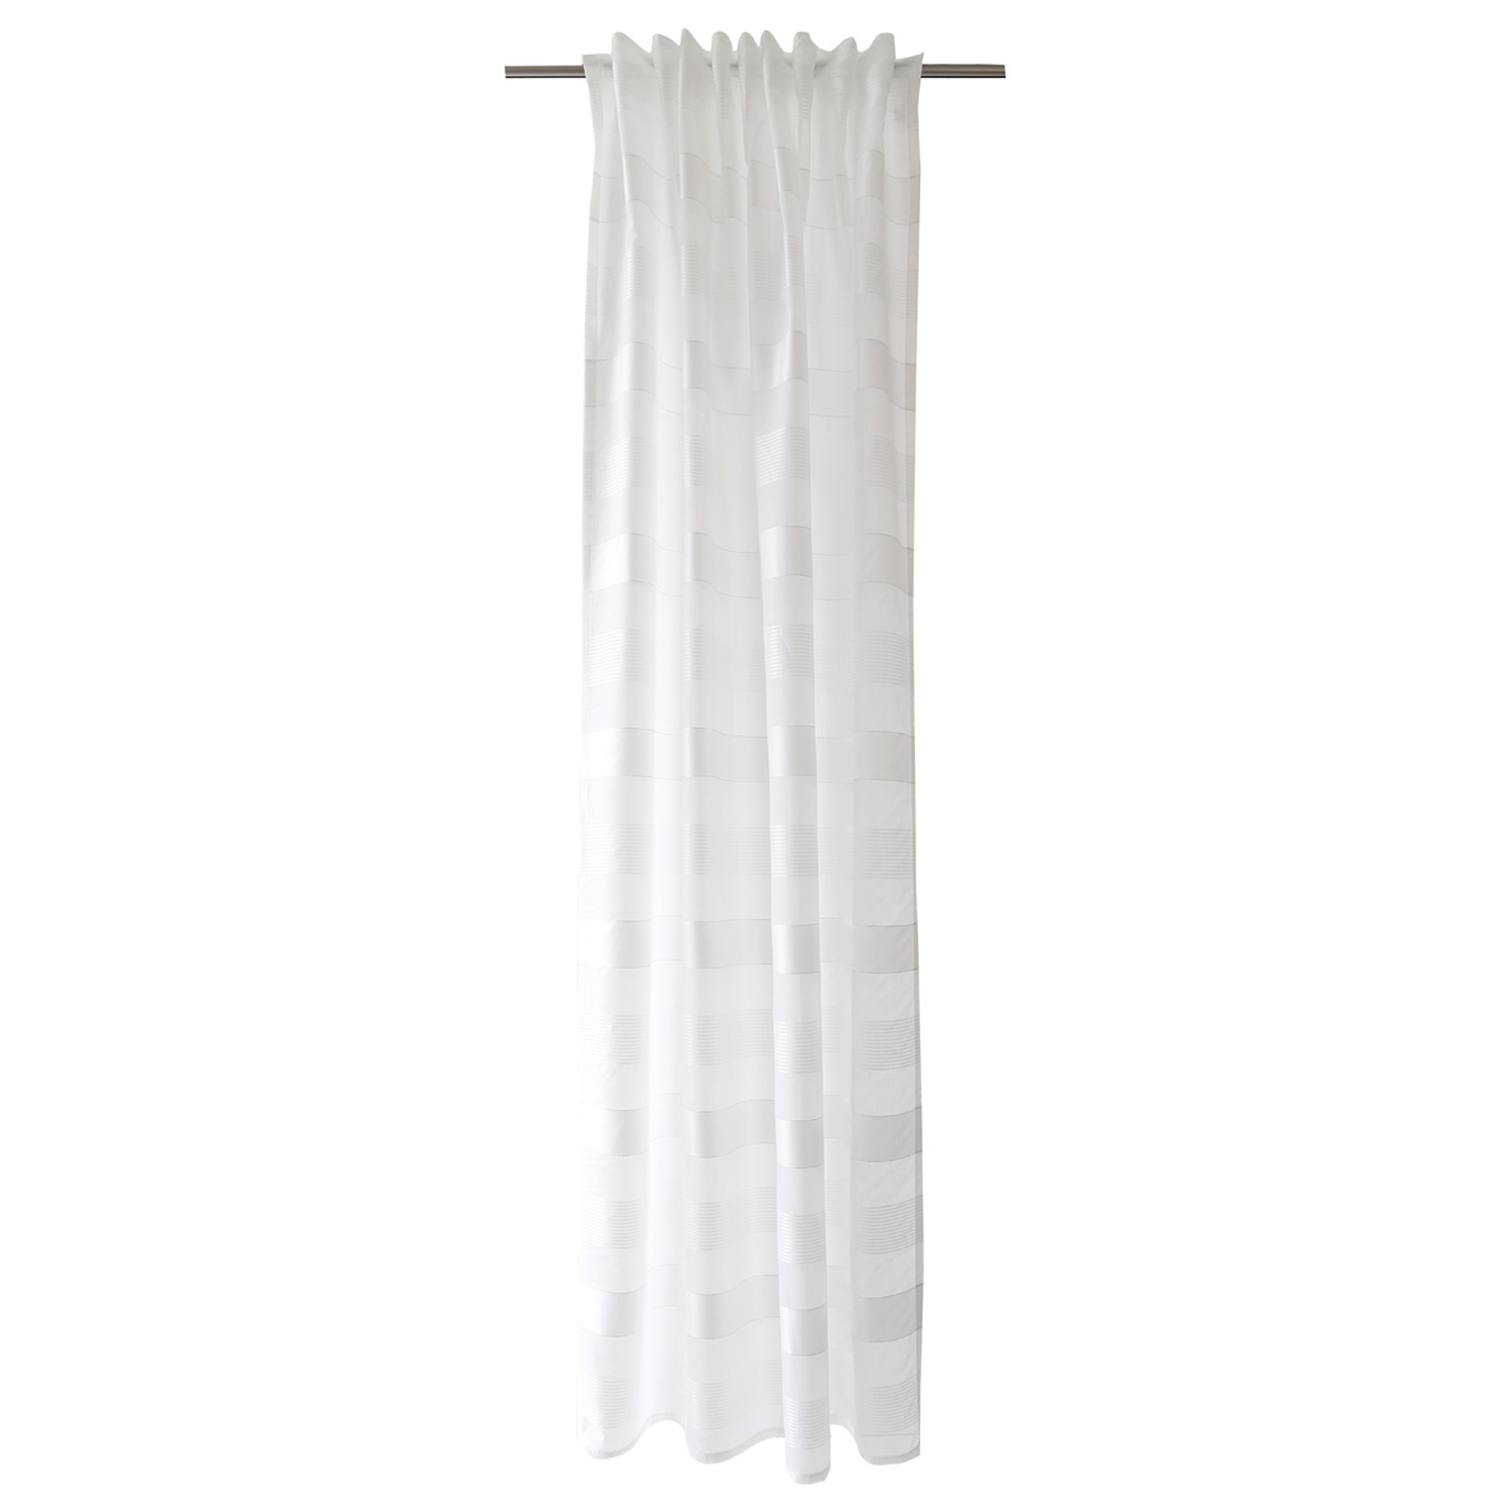 HOMING Vorhang mit verdeckten Schlaufen Lena weiß Halbtransparenter Vorhang mit Querstreifen